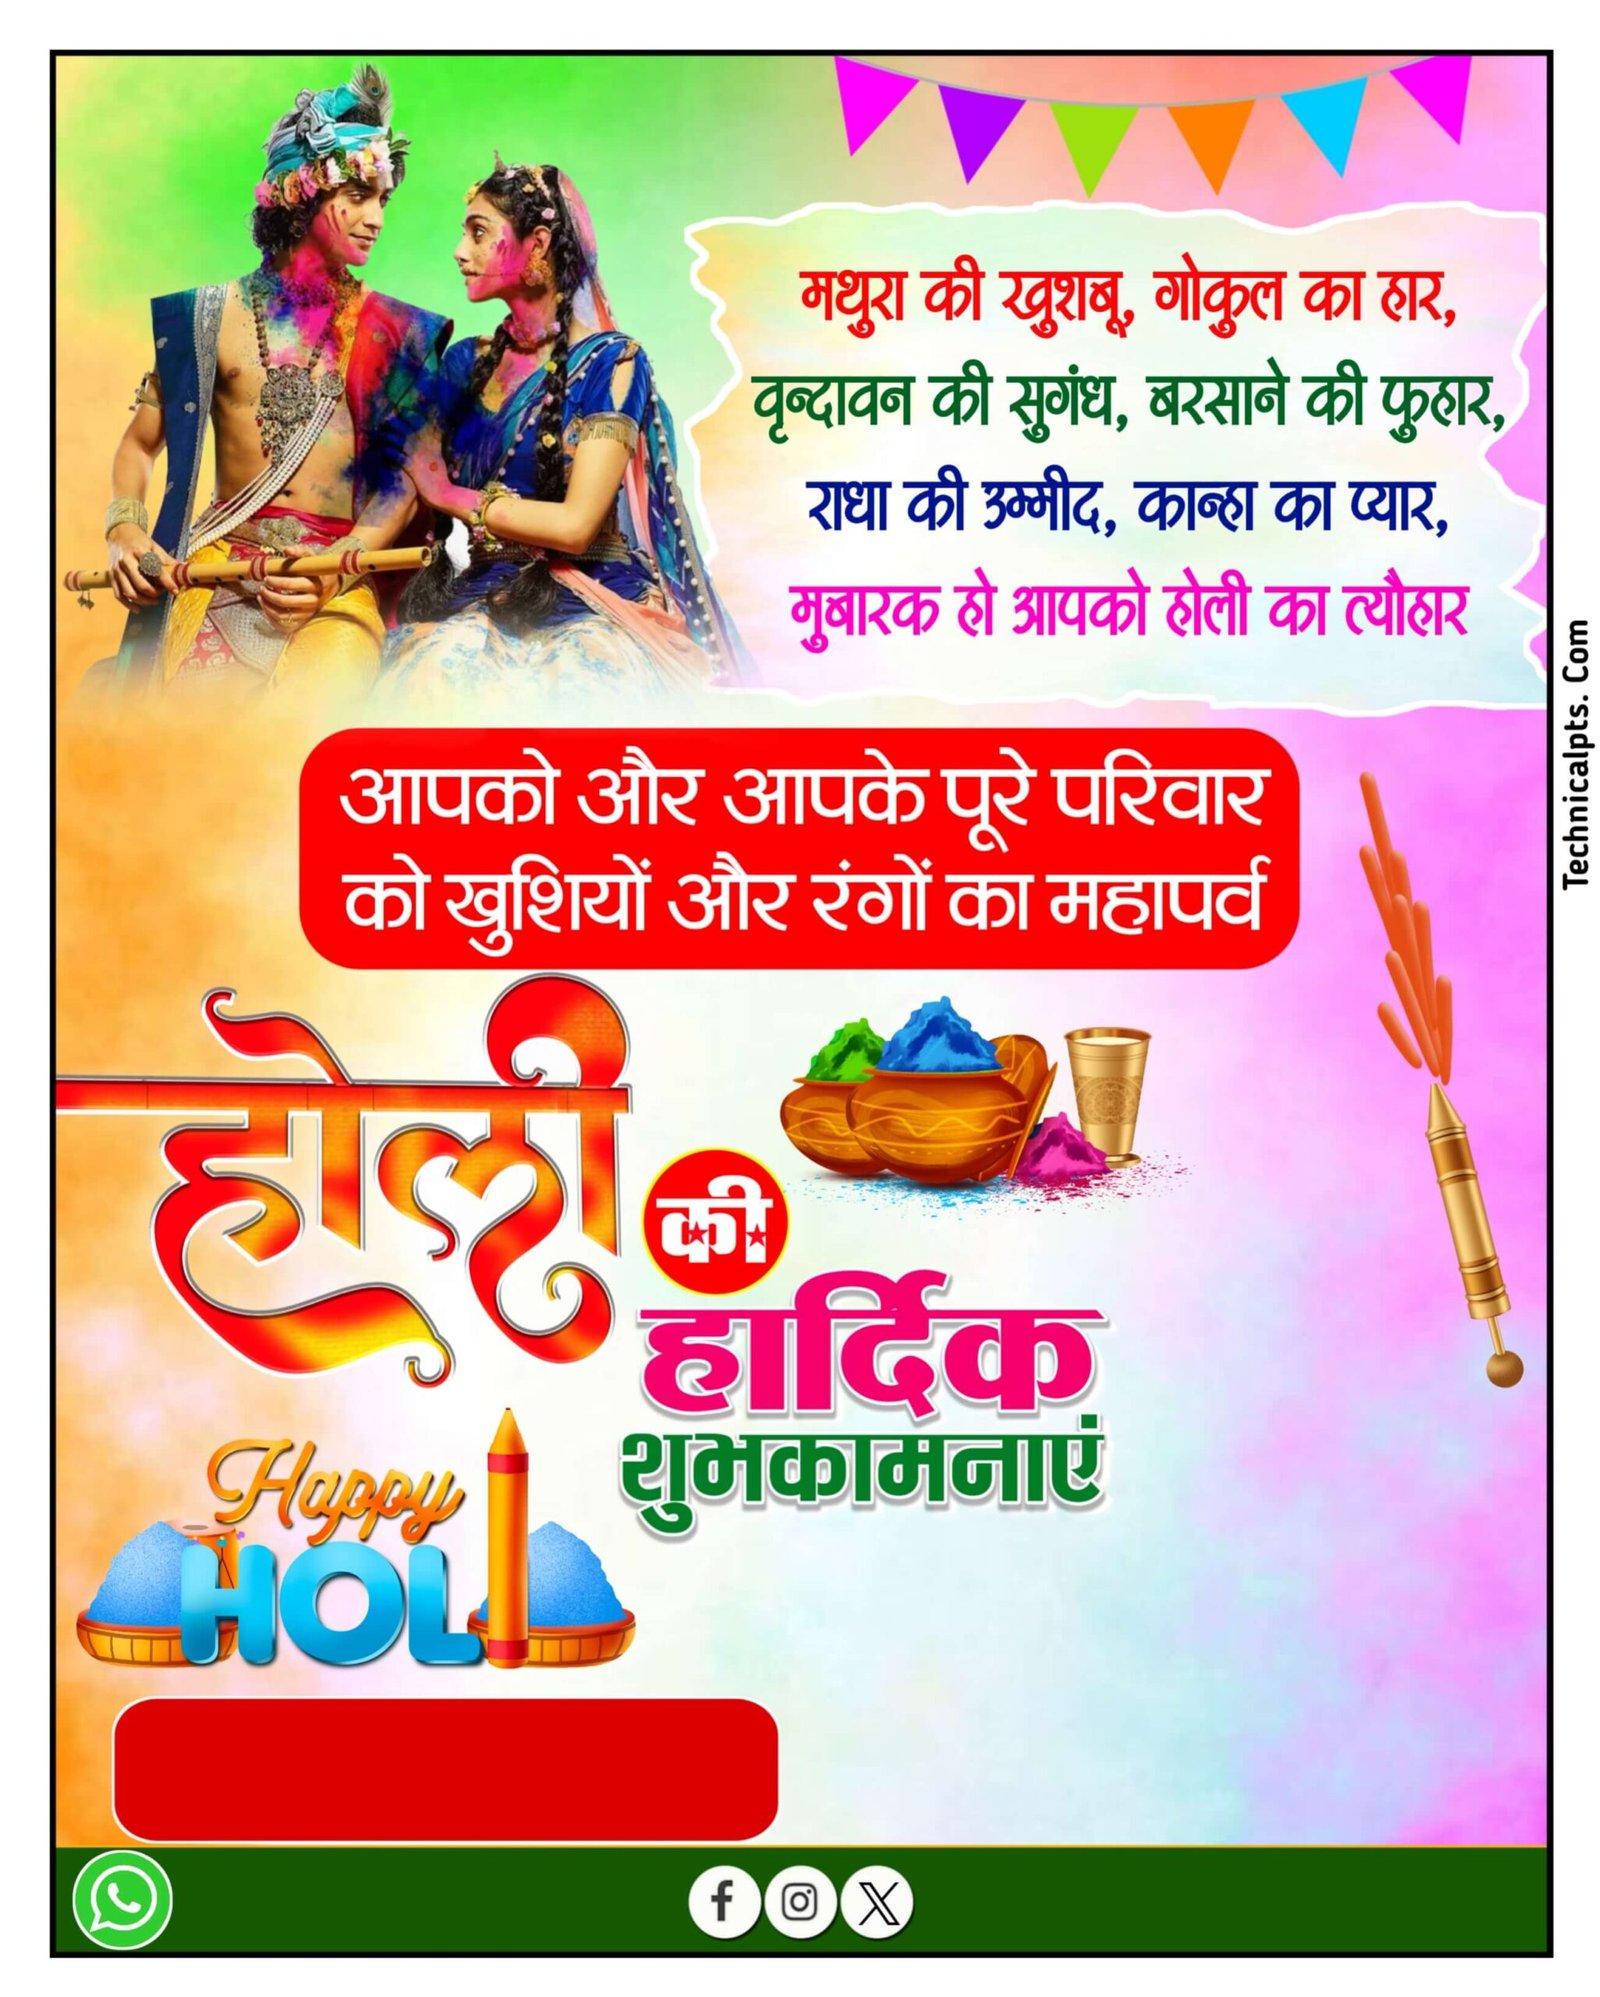 Mobile se holi ka banner banaen| happy Holi banner editing in mobile| holi banner background download| holi banner banaye